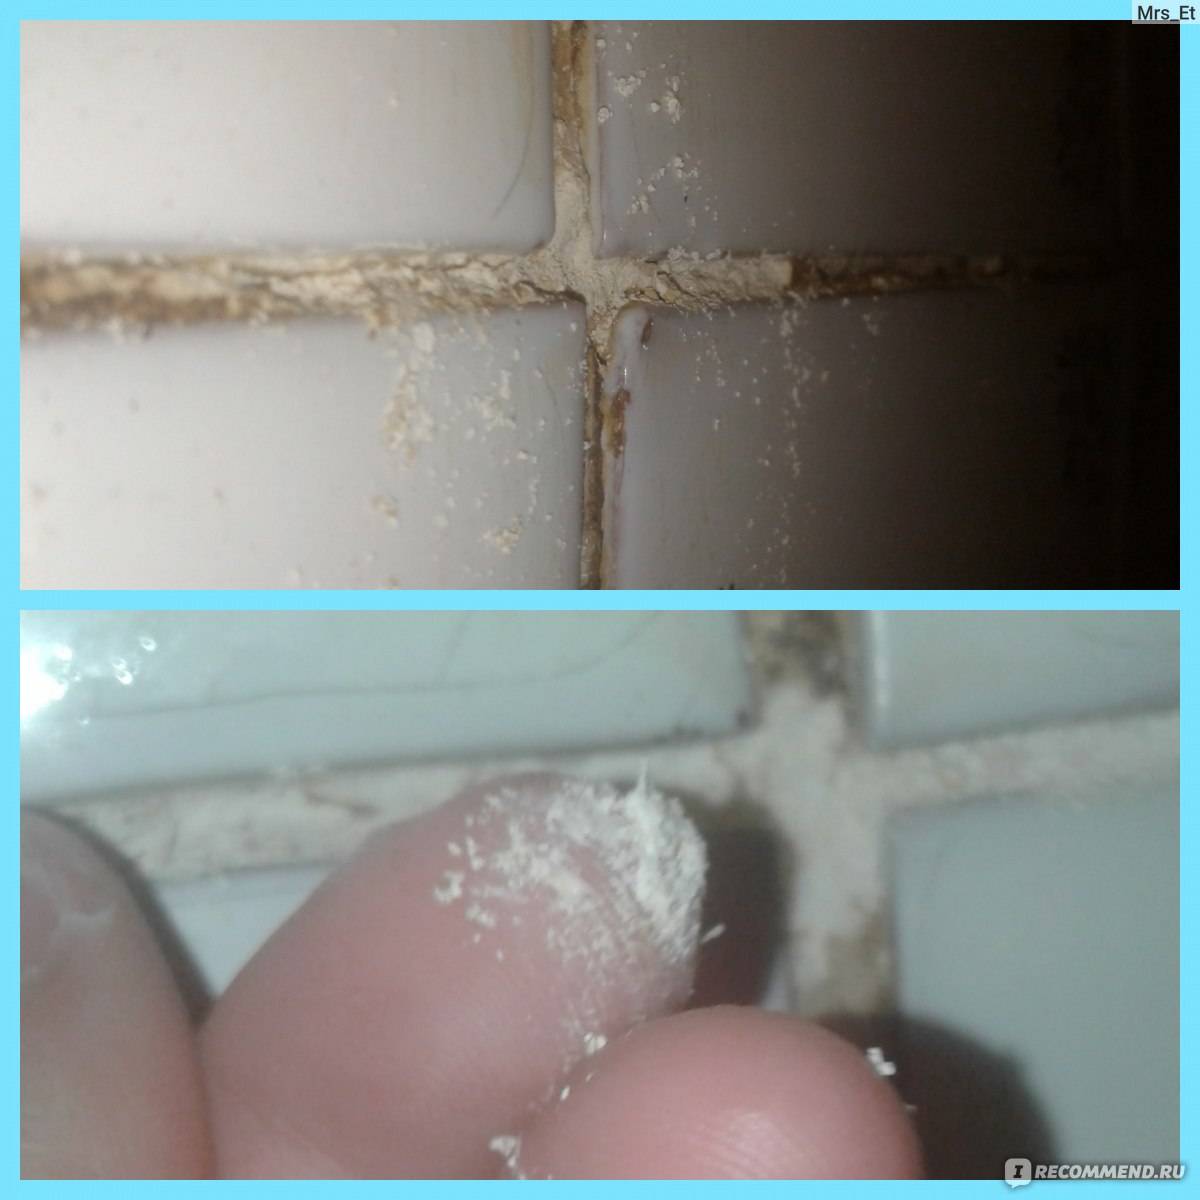 Плесень на герметике и силиконе в ванной - почему появляется и как от нее избавиться